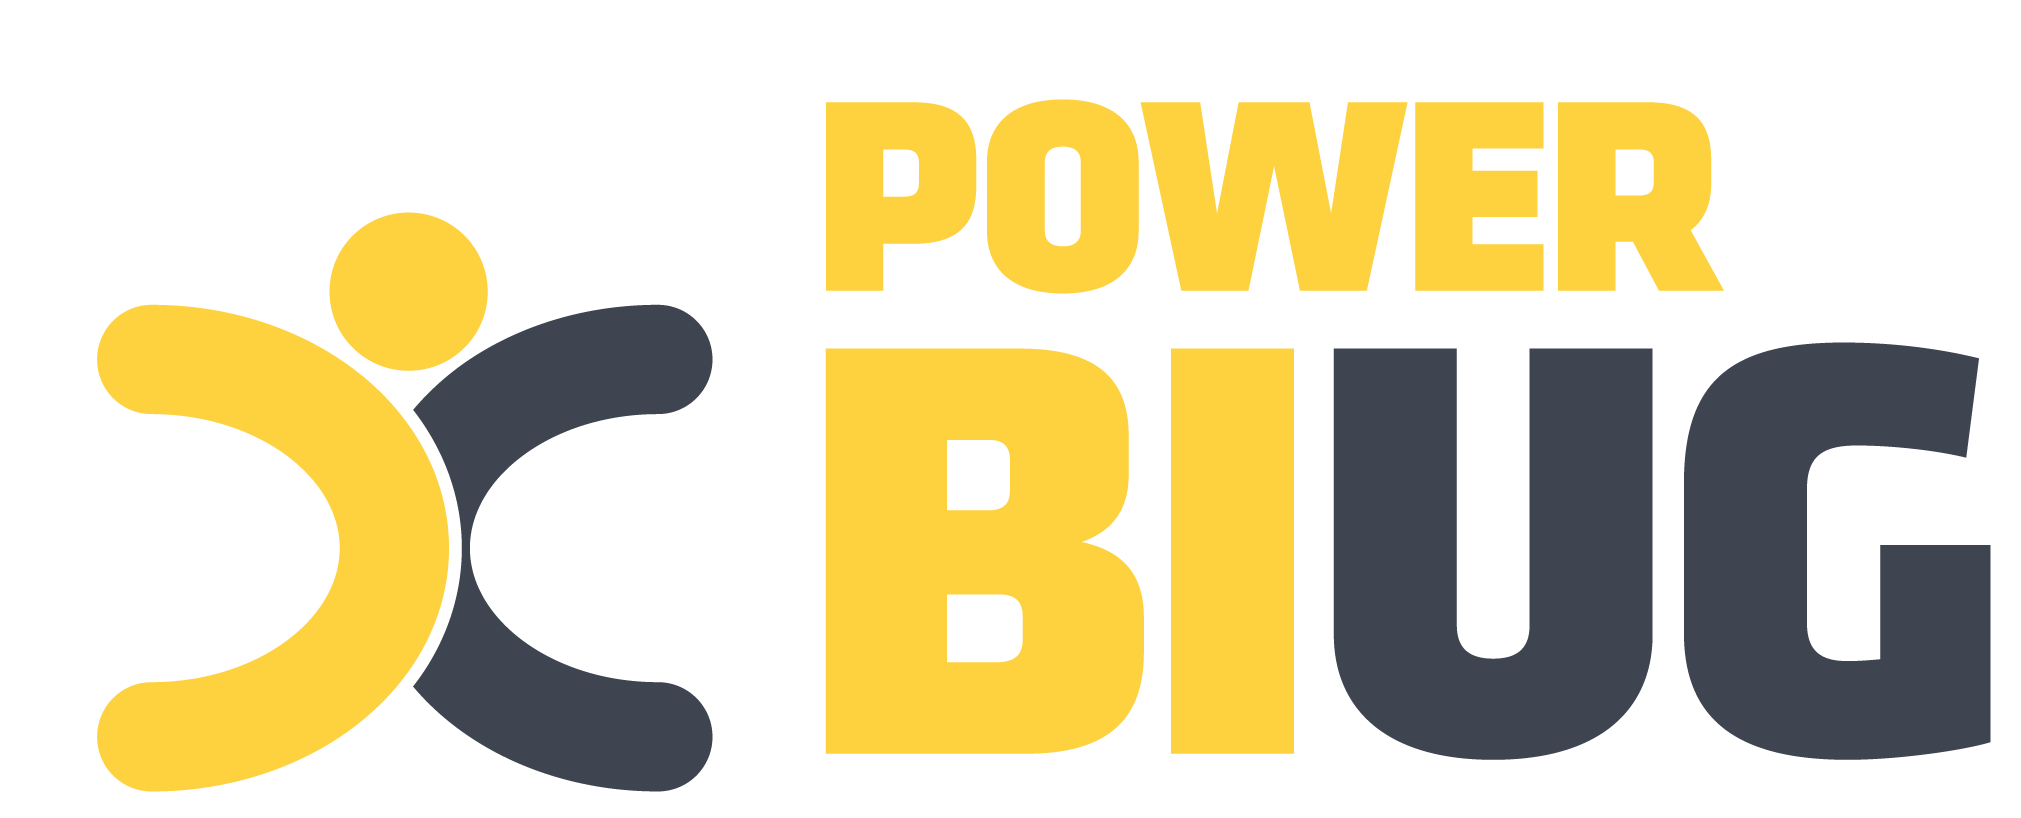 Power BI Logo - Home - Power BI User Group